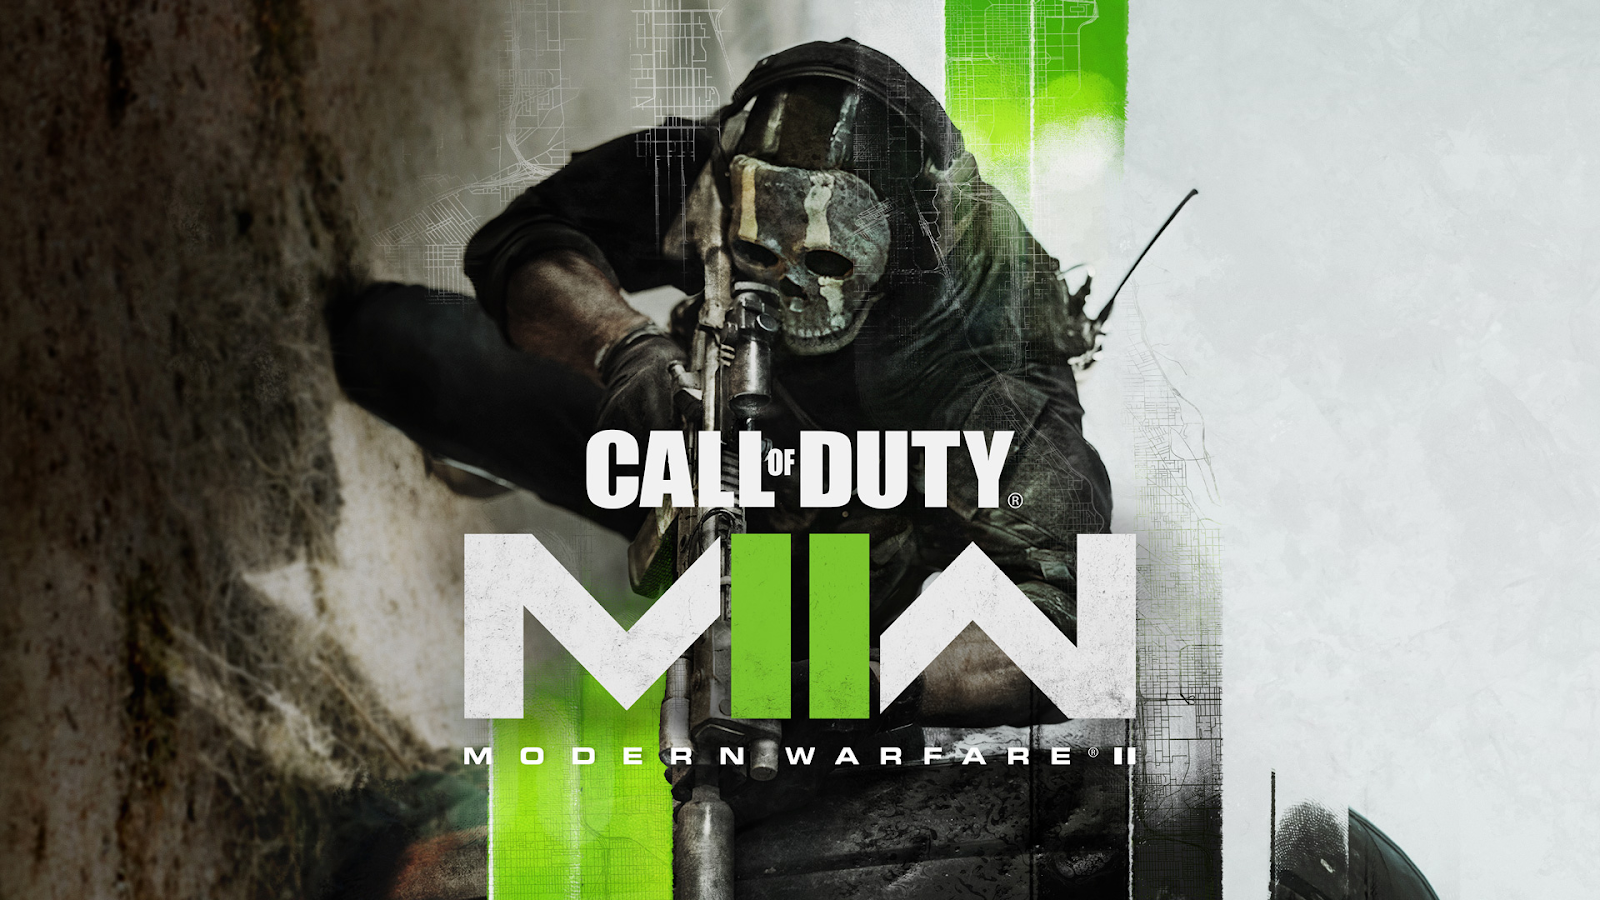 Call of Duty: Modern Warfare II ภาคต่อของซีรีส์เกมยิงในตำนาน ประกาศพร้อมวางจำหน่ายทั่วโลก 28 ตุลาคม 2022 นี้